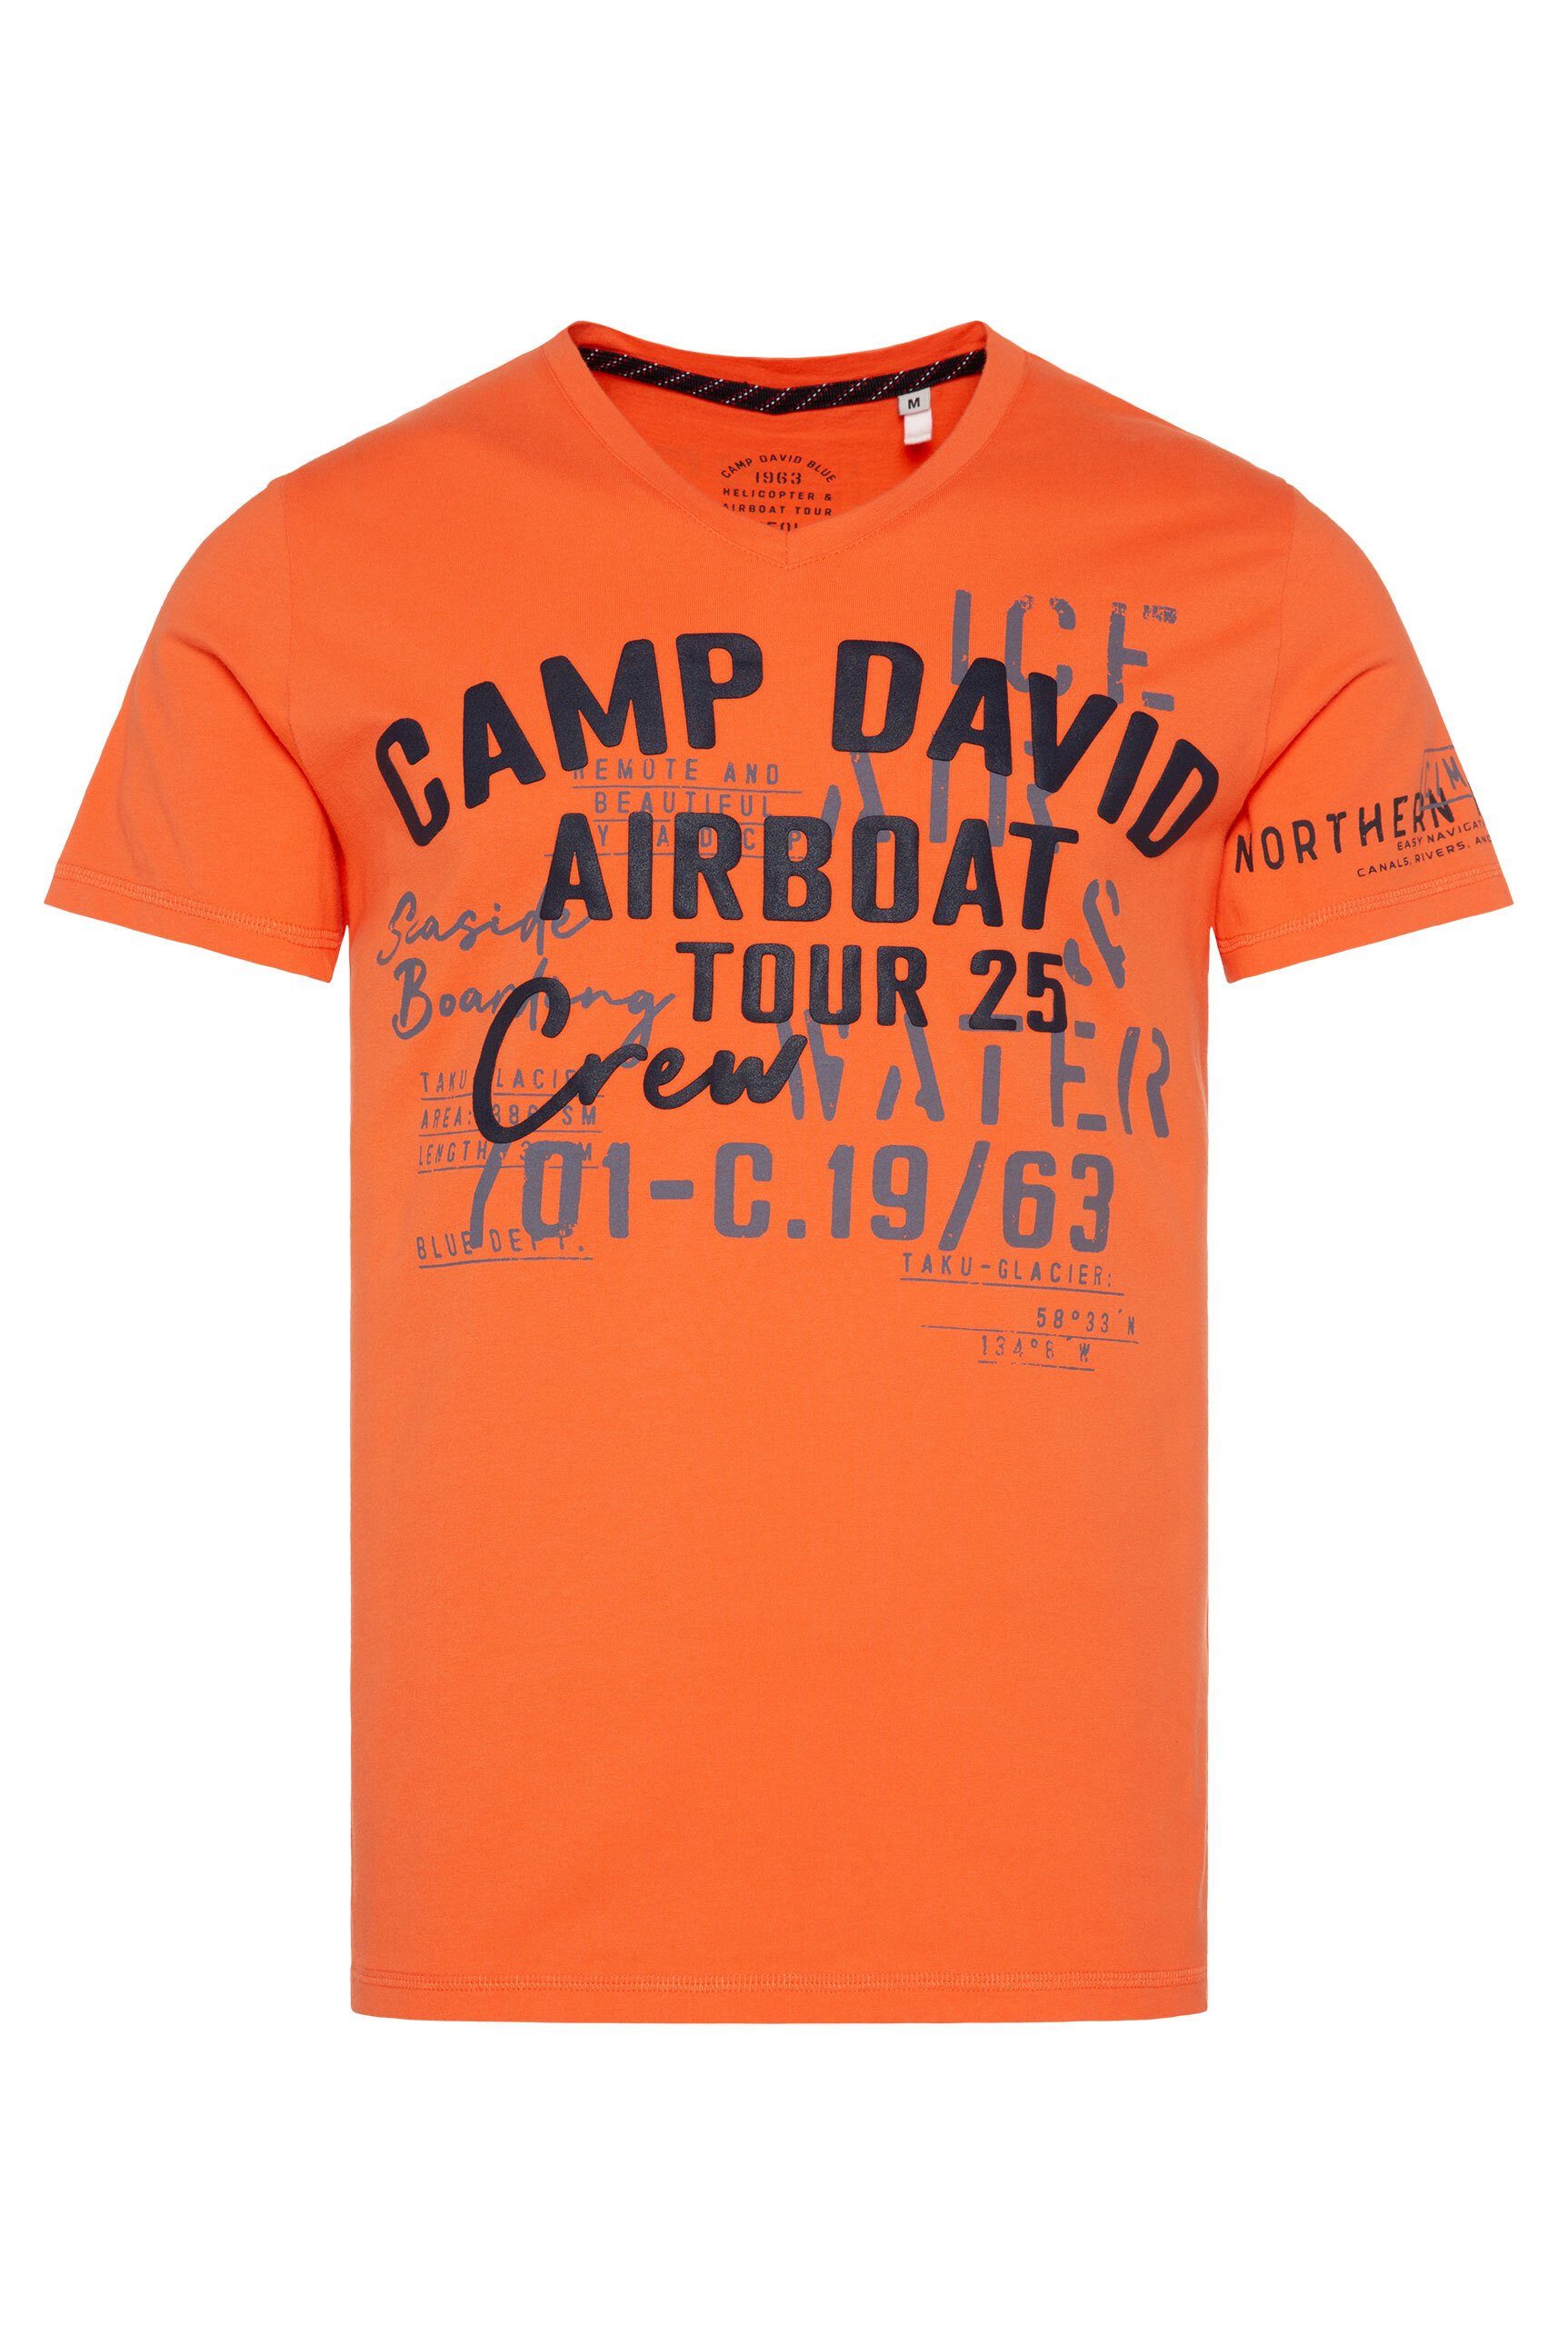 CAMP DAVID V-Shirt aus orange Baumwolle misssion